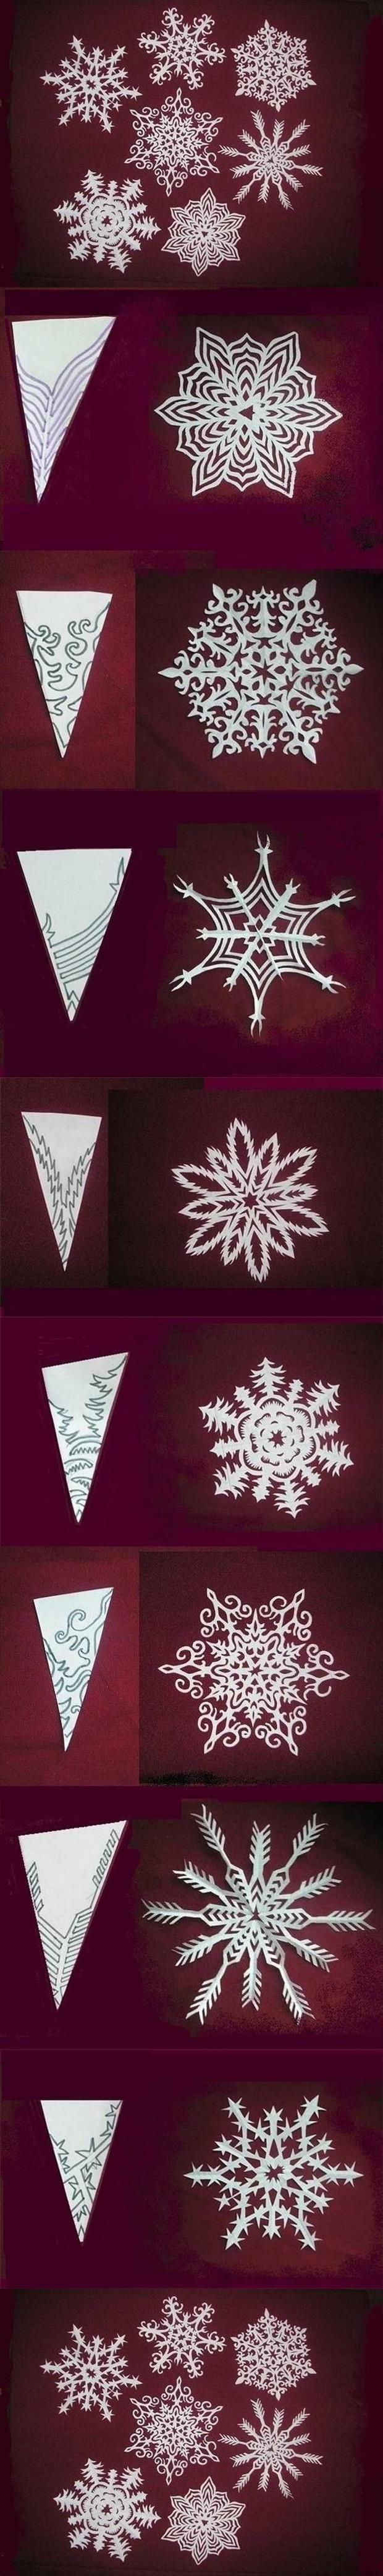 DIY-Snowflake-Paper-Patterns-2